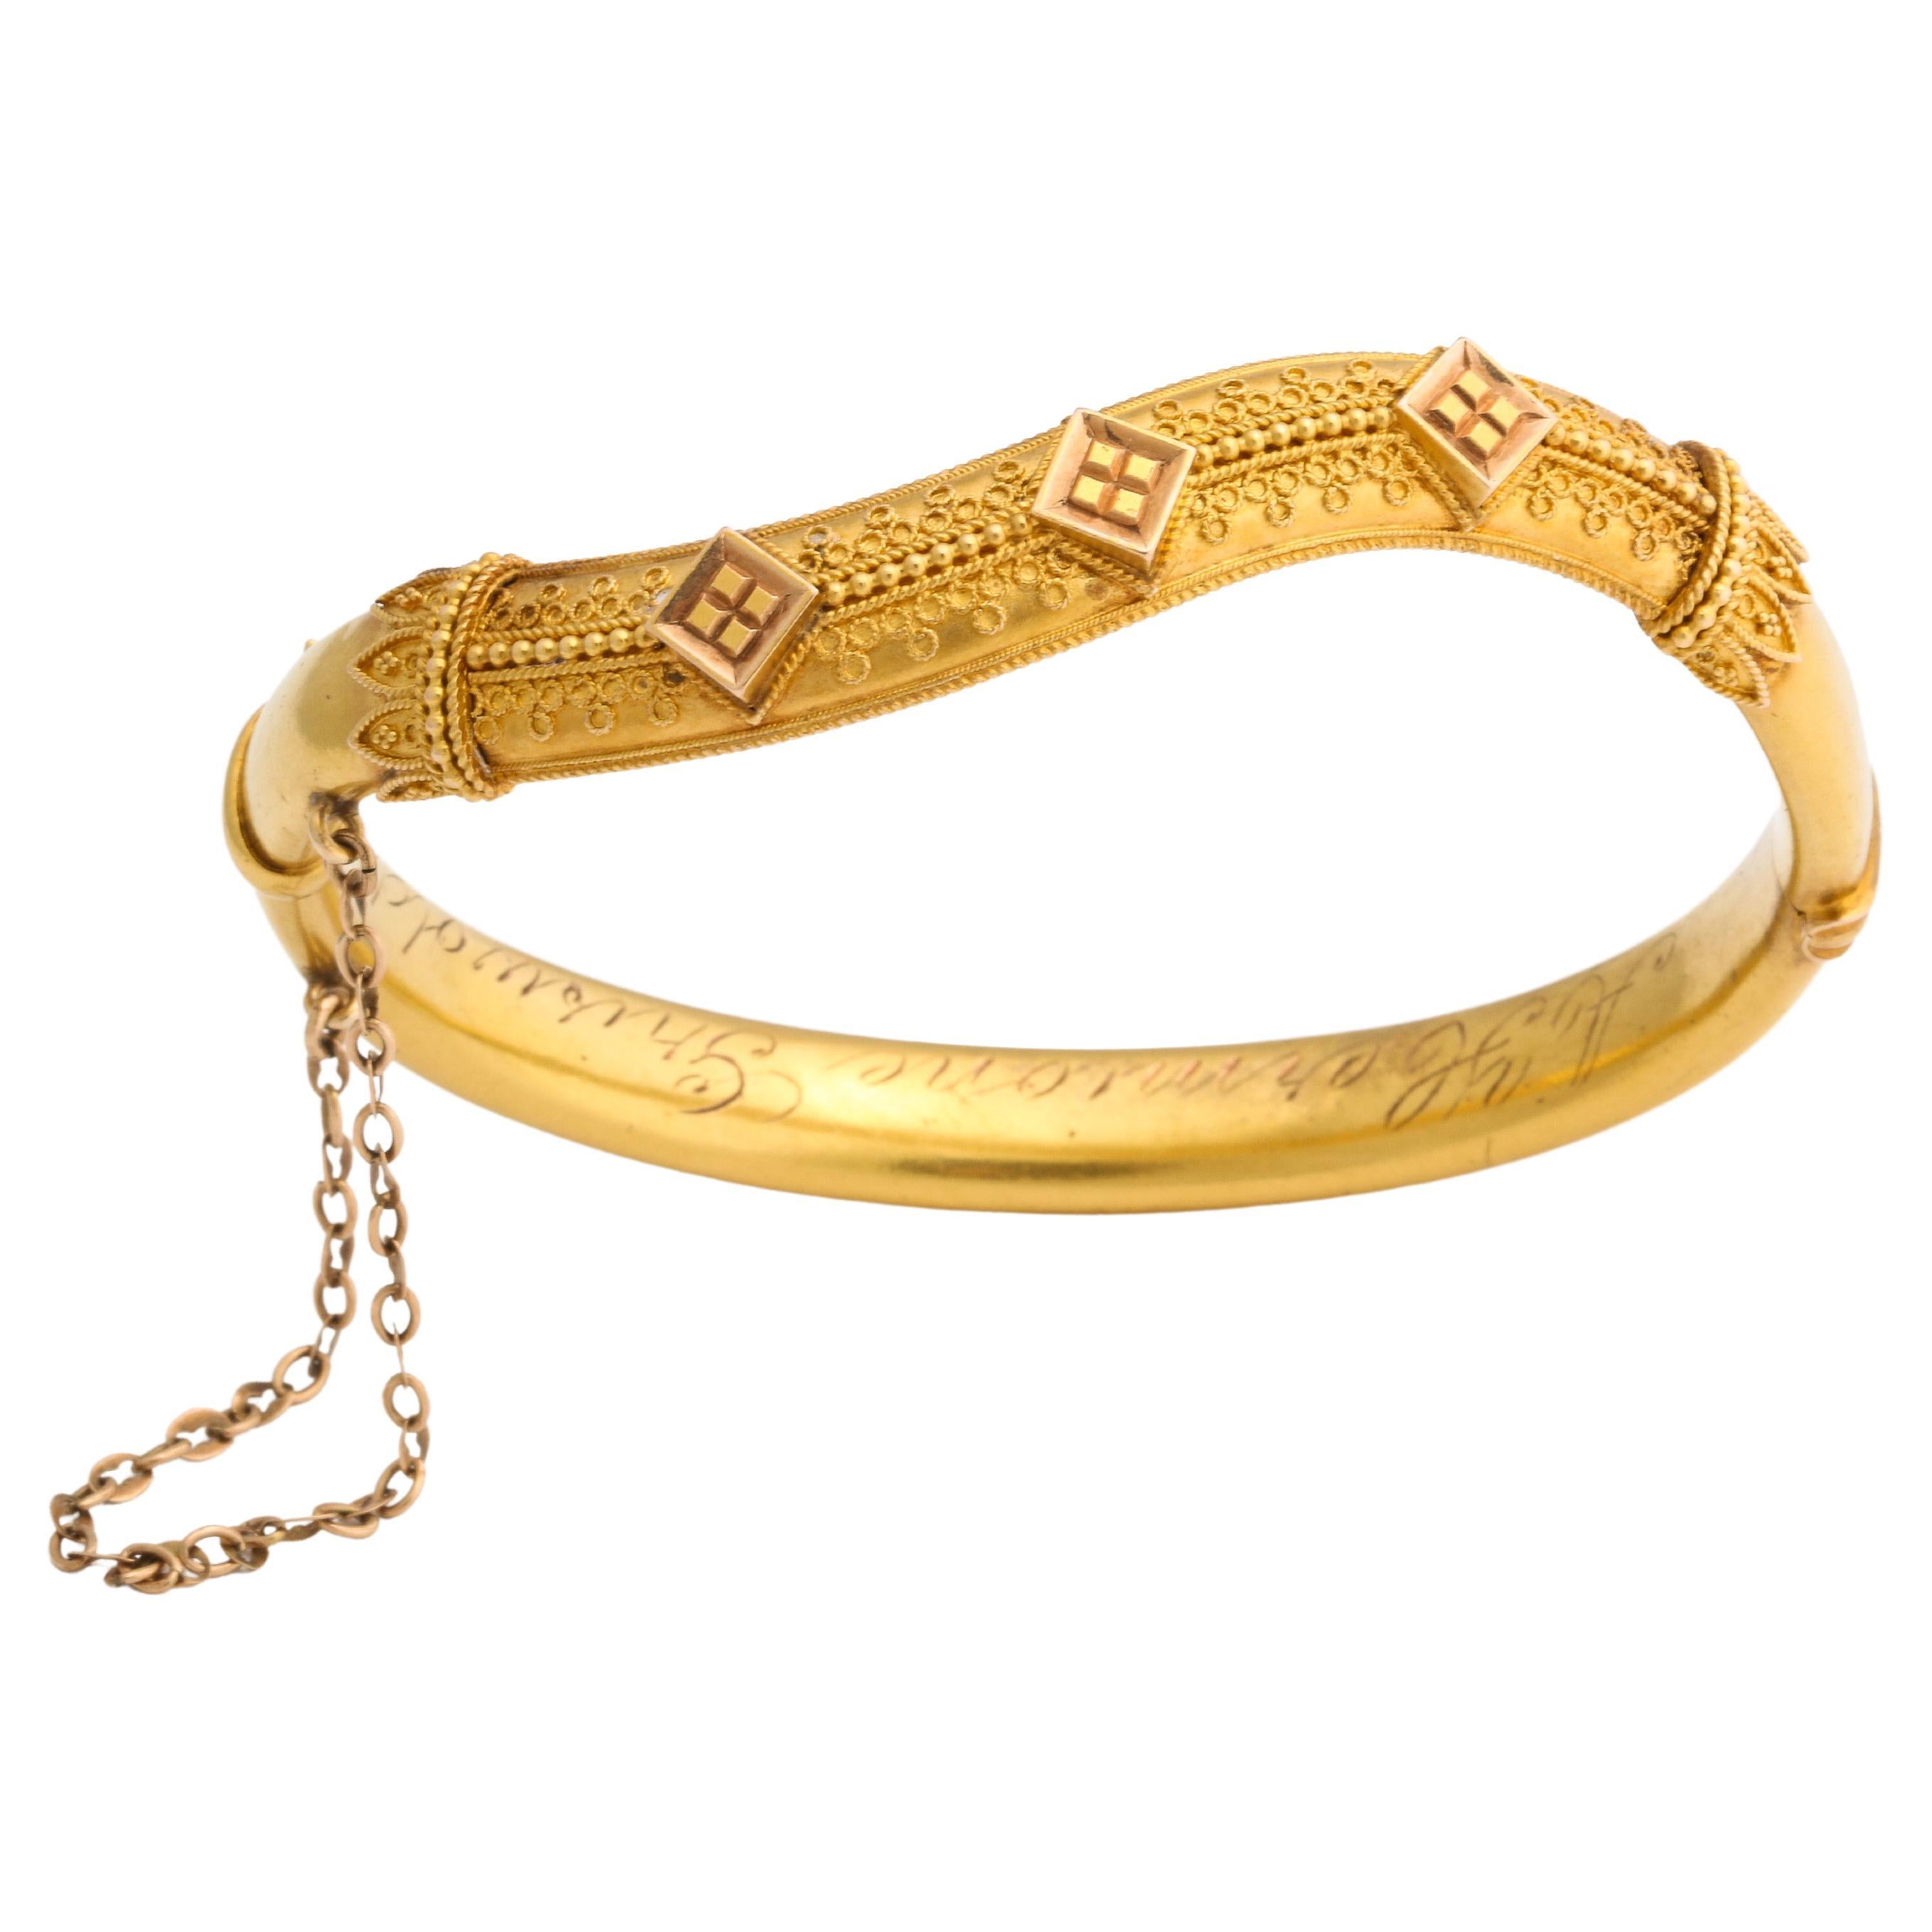 Antique Etruscan Revival Wave Bracelet in 15 Kt Gold